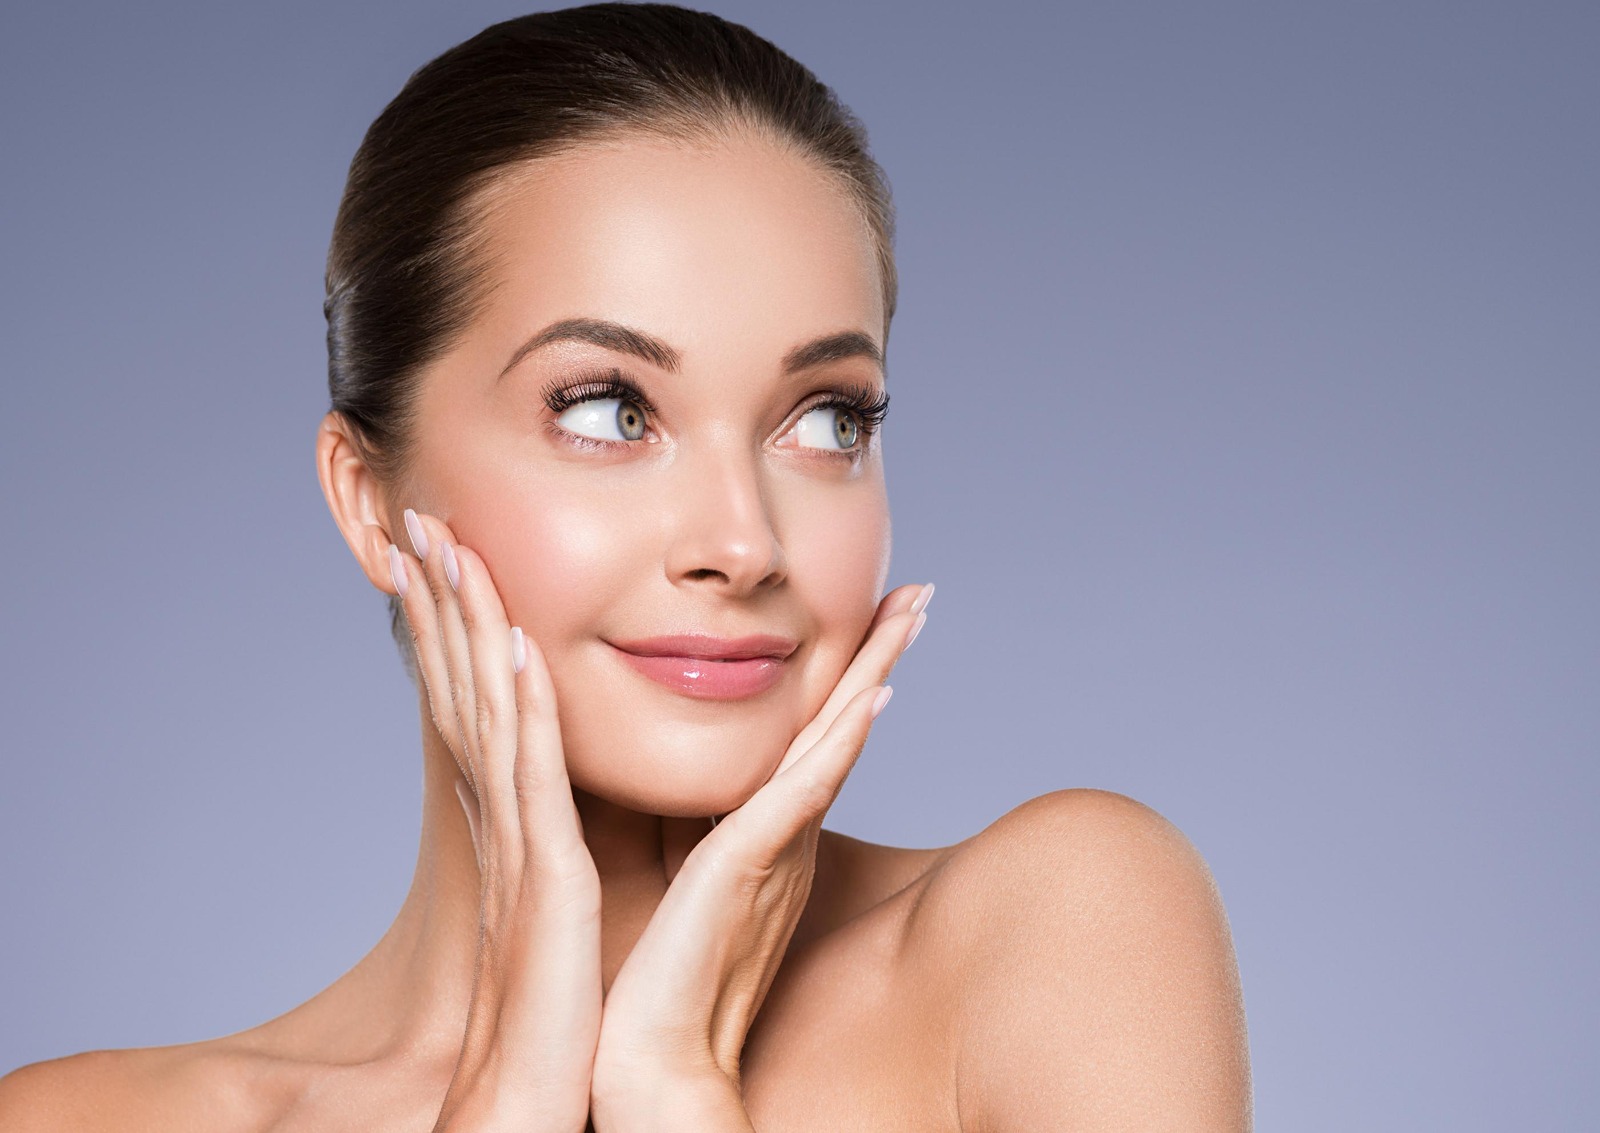 Resalta la belleza natural de tu rostro a través de la armonización facial con ácido hialurónico